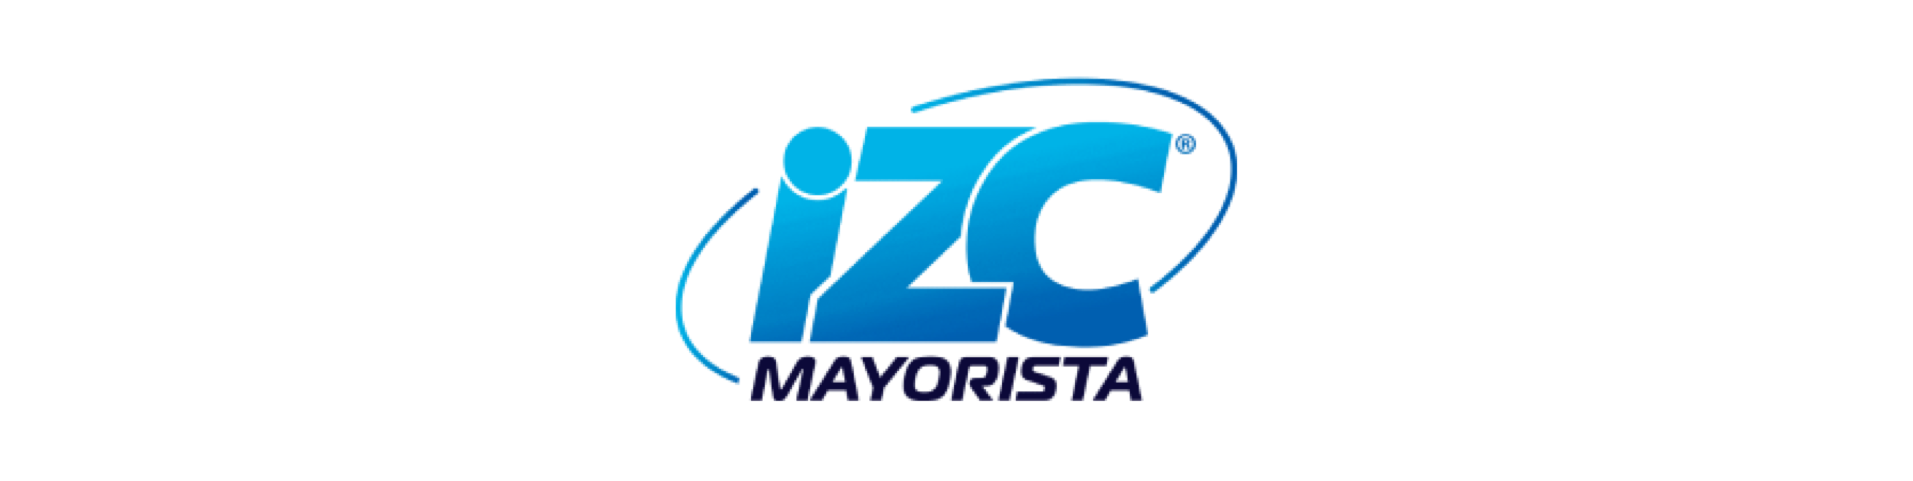 logotipo de izc